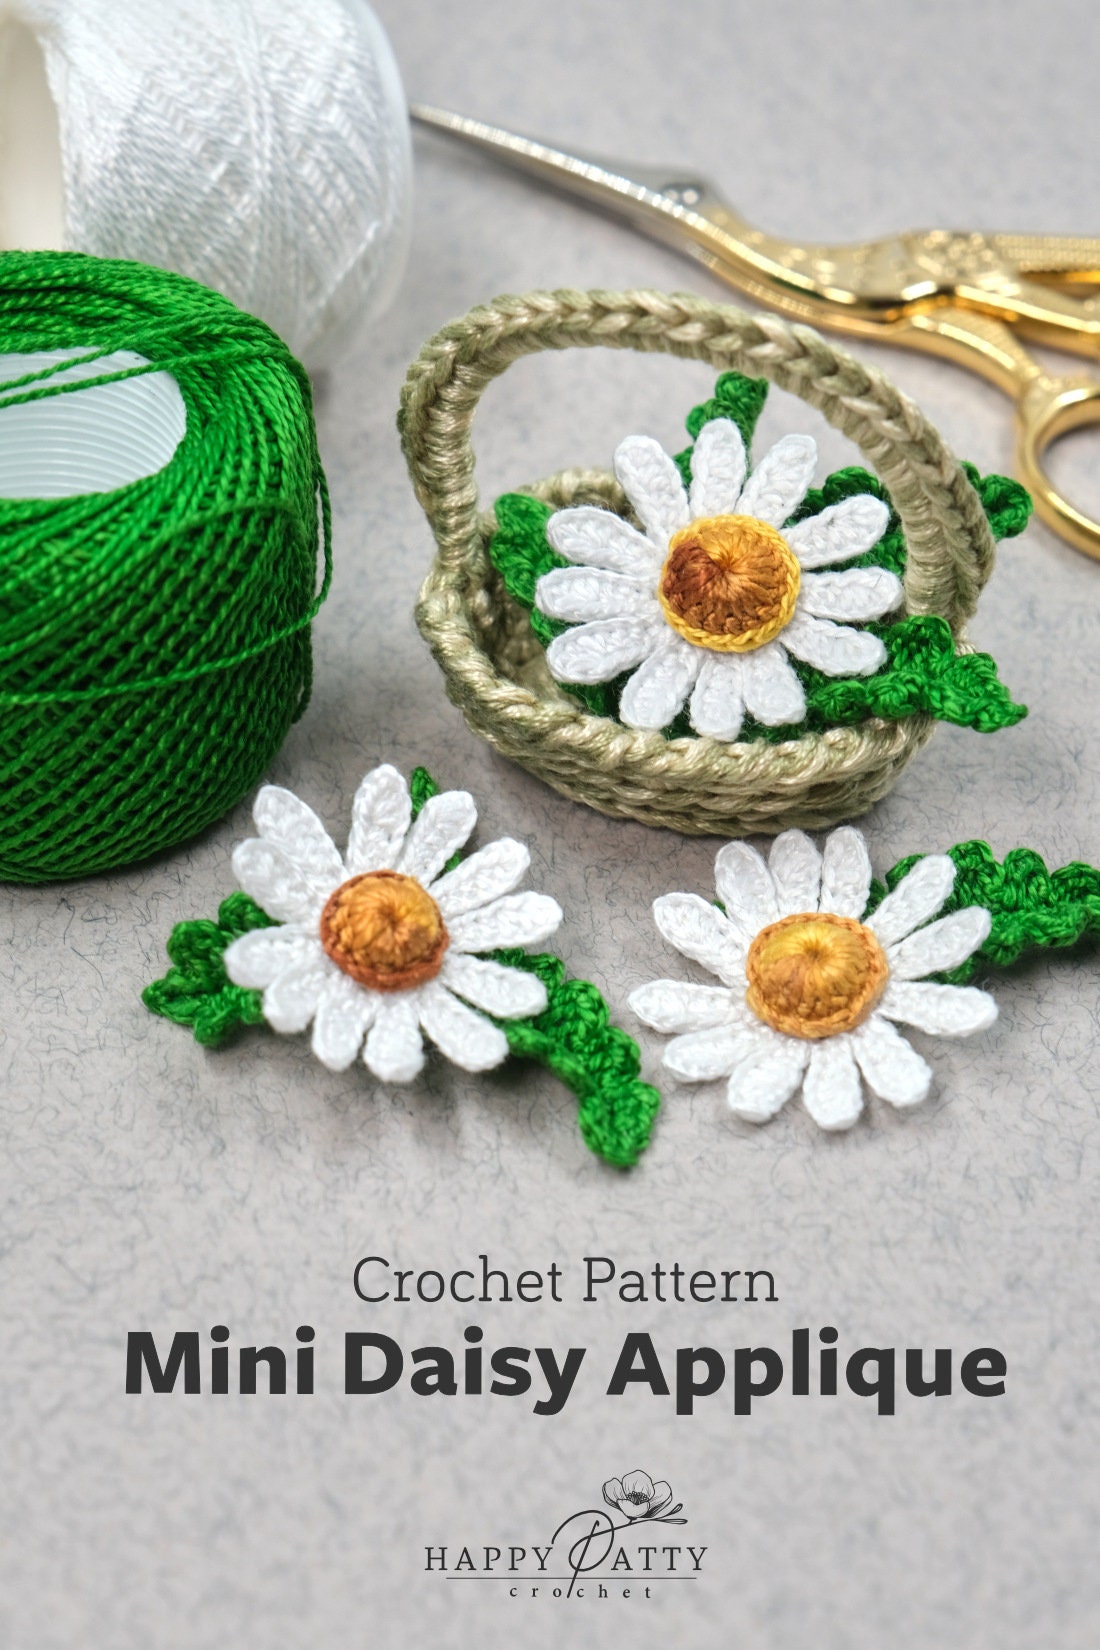 Crochet Mini Daisy Applique Pattern - Crochet Flower Pattern for a Miniature Daisy Applique